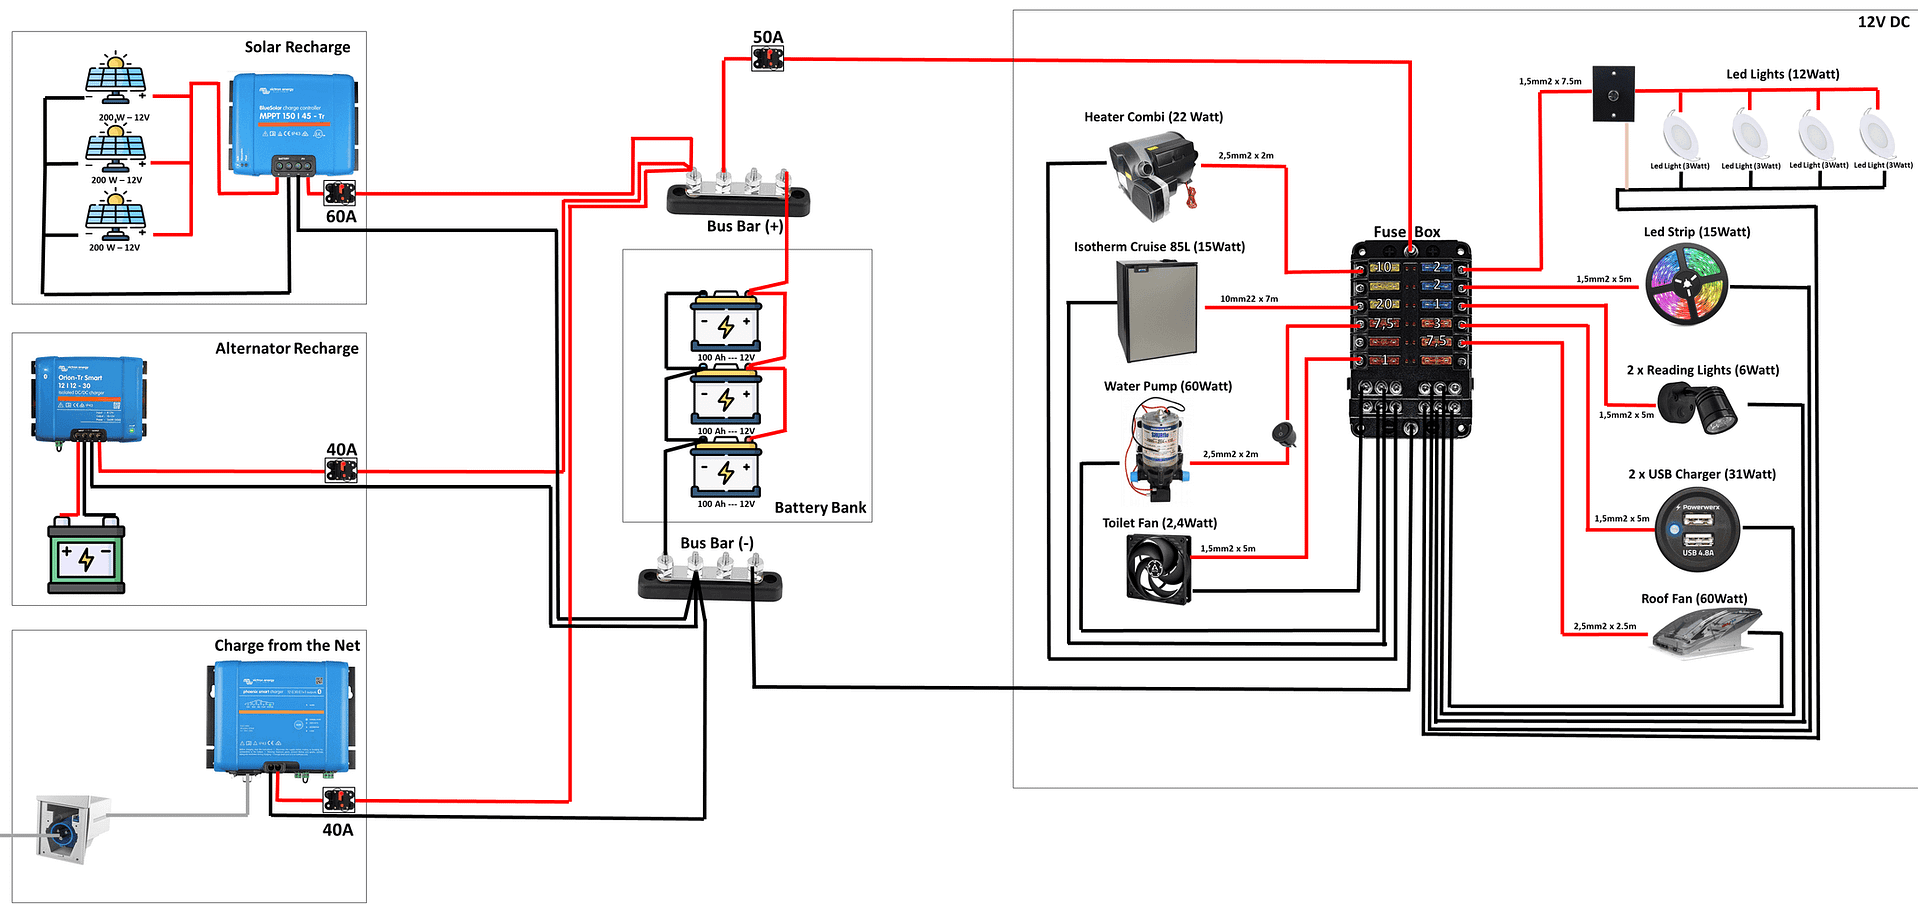 Inserire più apparati su uno stesso circuito 12V DC ed inserire degli interruttori